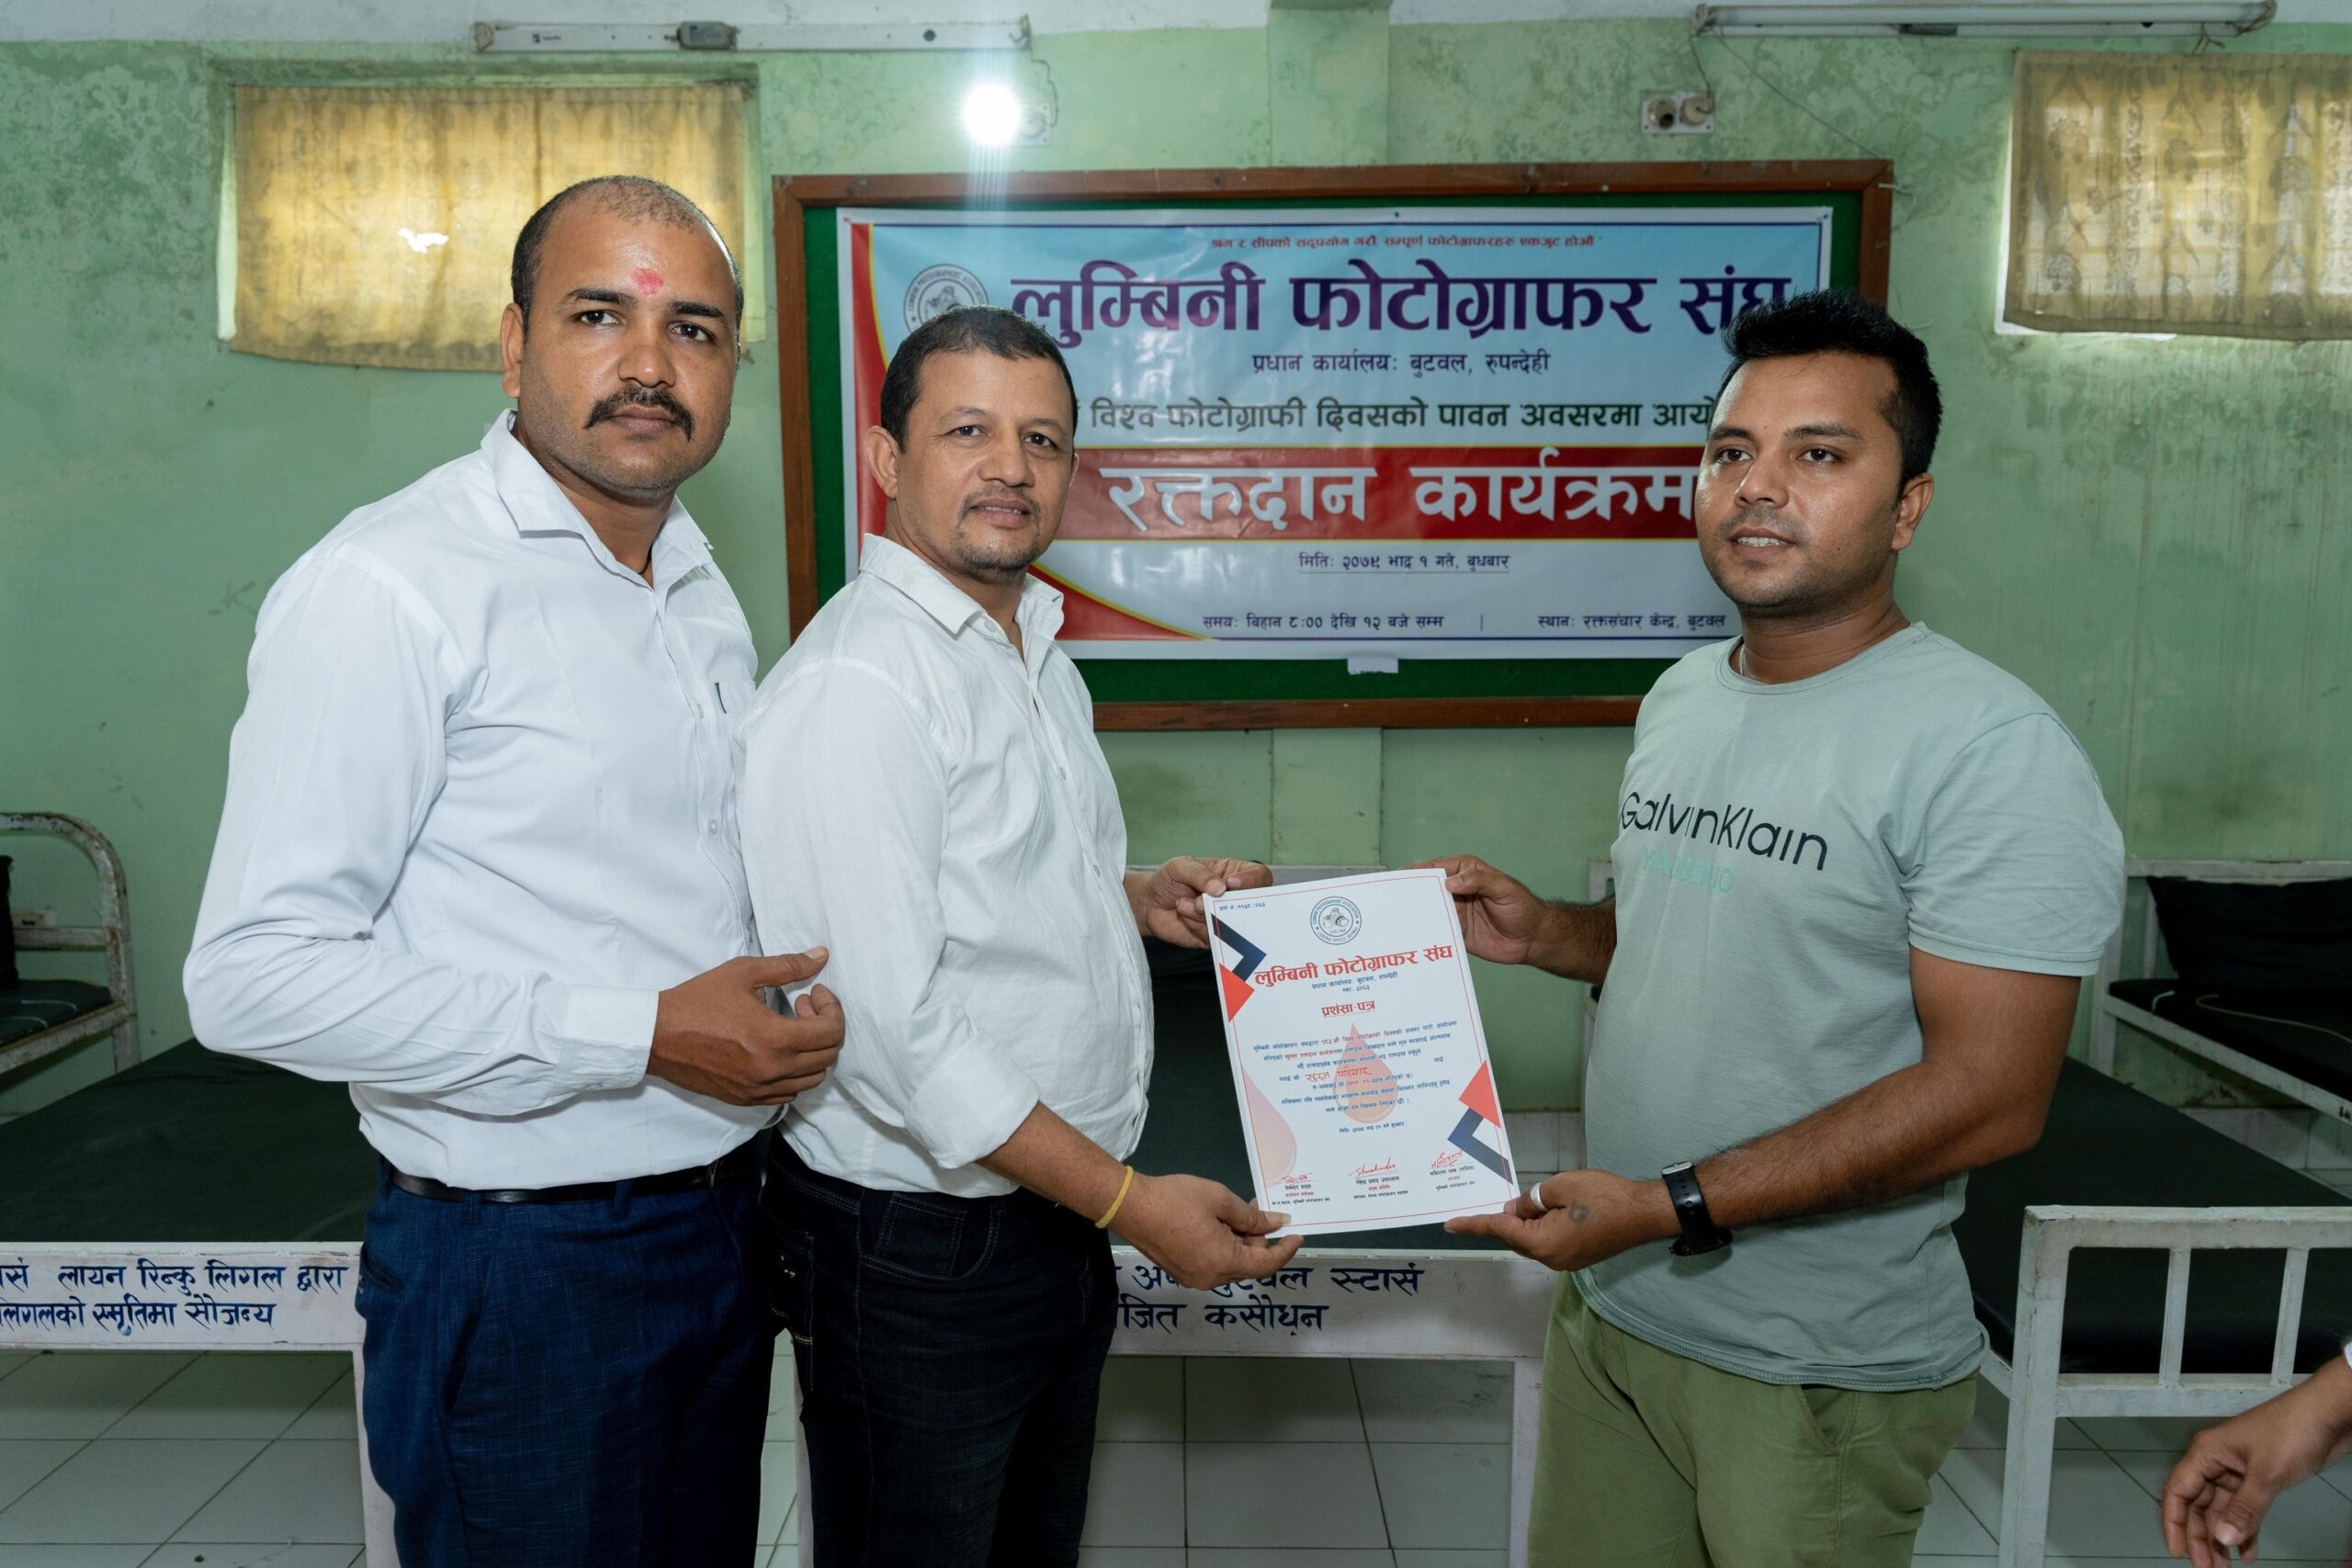 लुम्बिनी फोटो ग्राफर संघको सप्ताहव्यापी कार्यक्रम  , ५० जनाले गरे रक्तदान